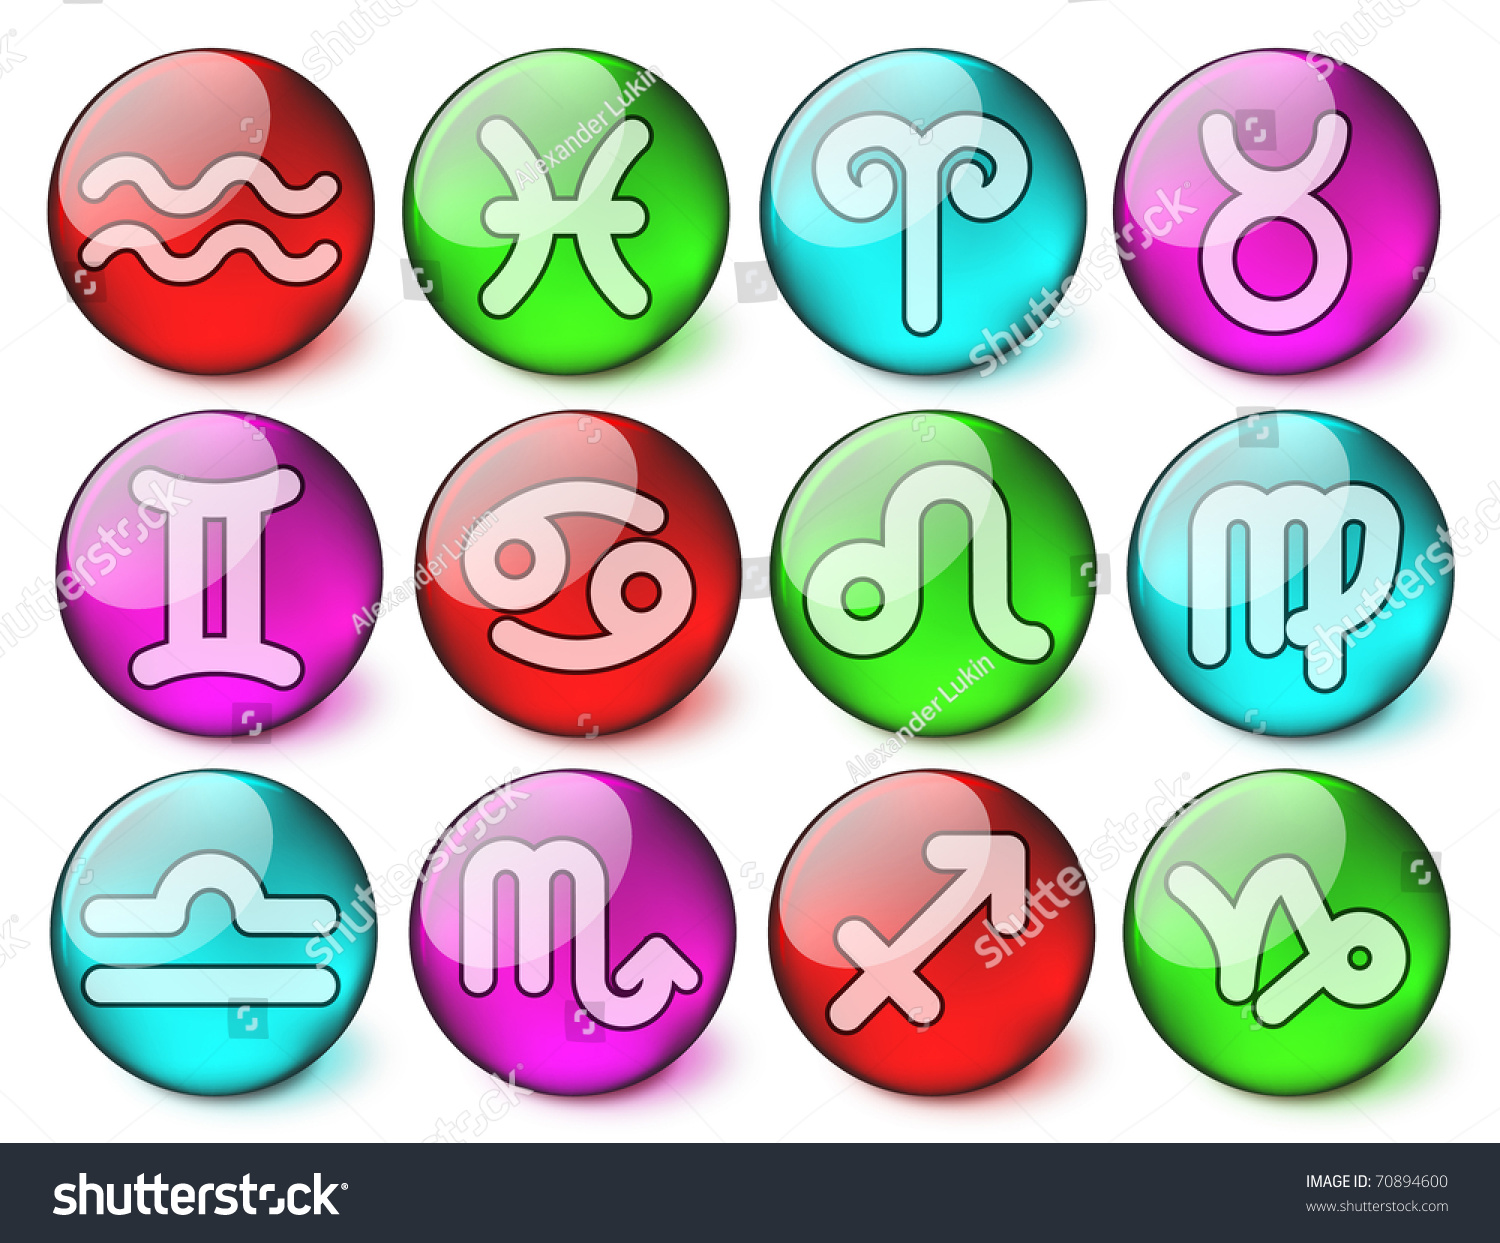 Zodiac Vector Iconset - Eps10 - 70894600 : Shutterstock